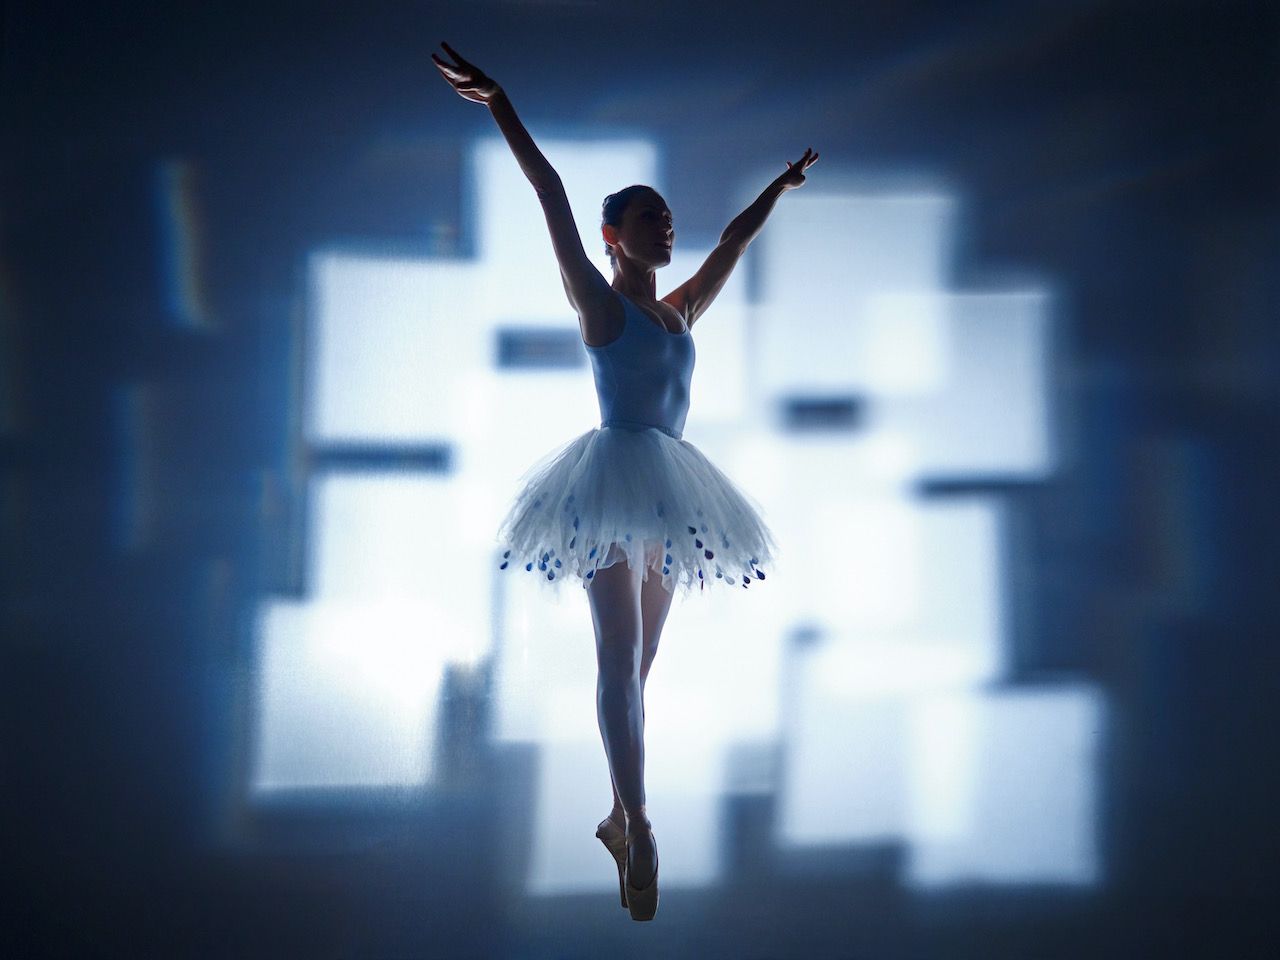 Michael Haegele fotografía abstracta silueta bailarina en tutú con cuadros luminosos superpuestos en el fondo